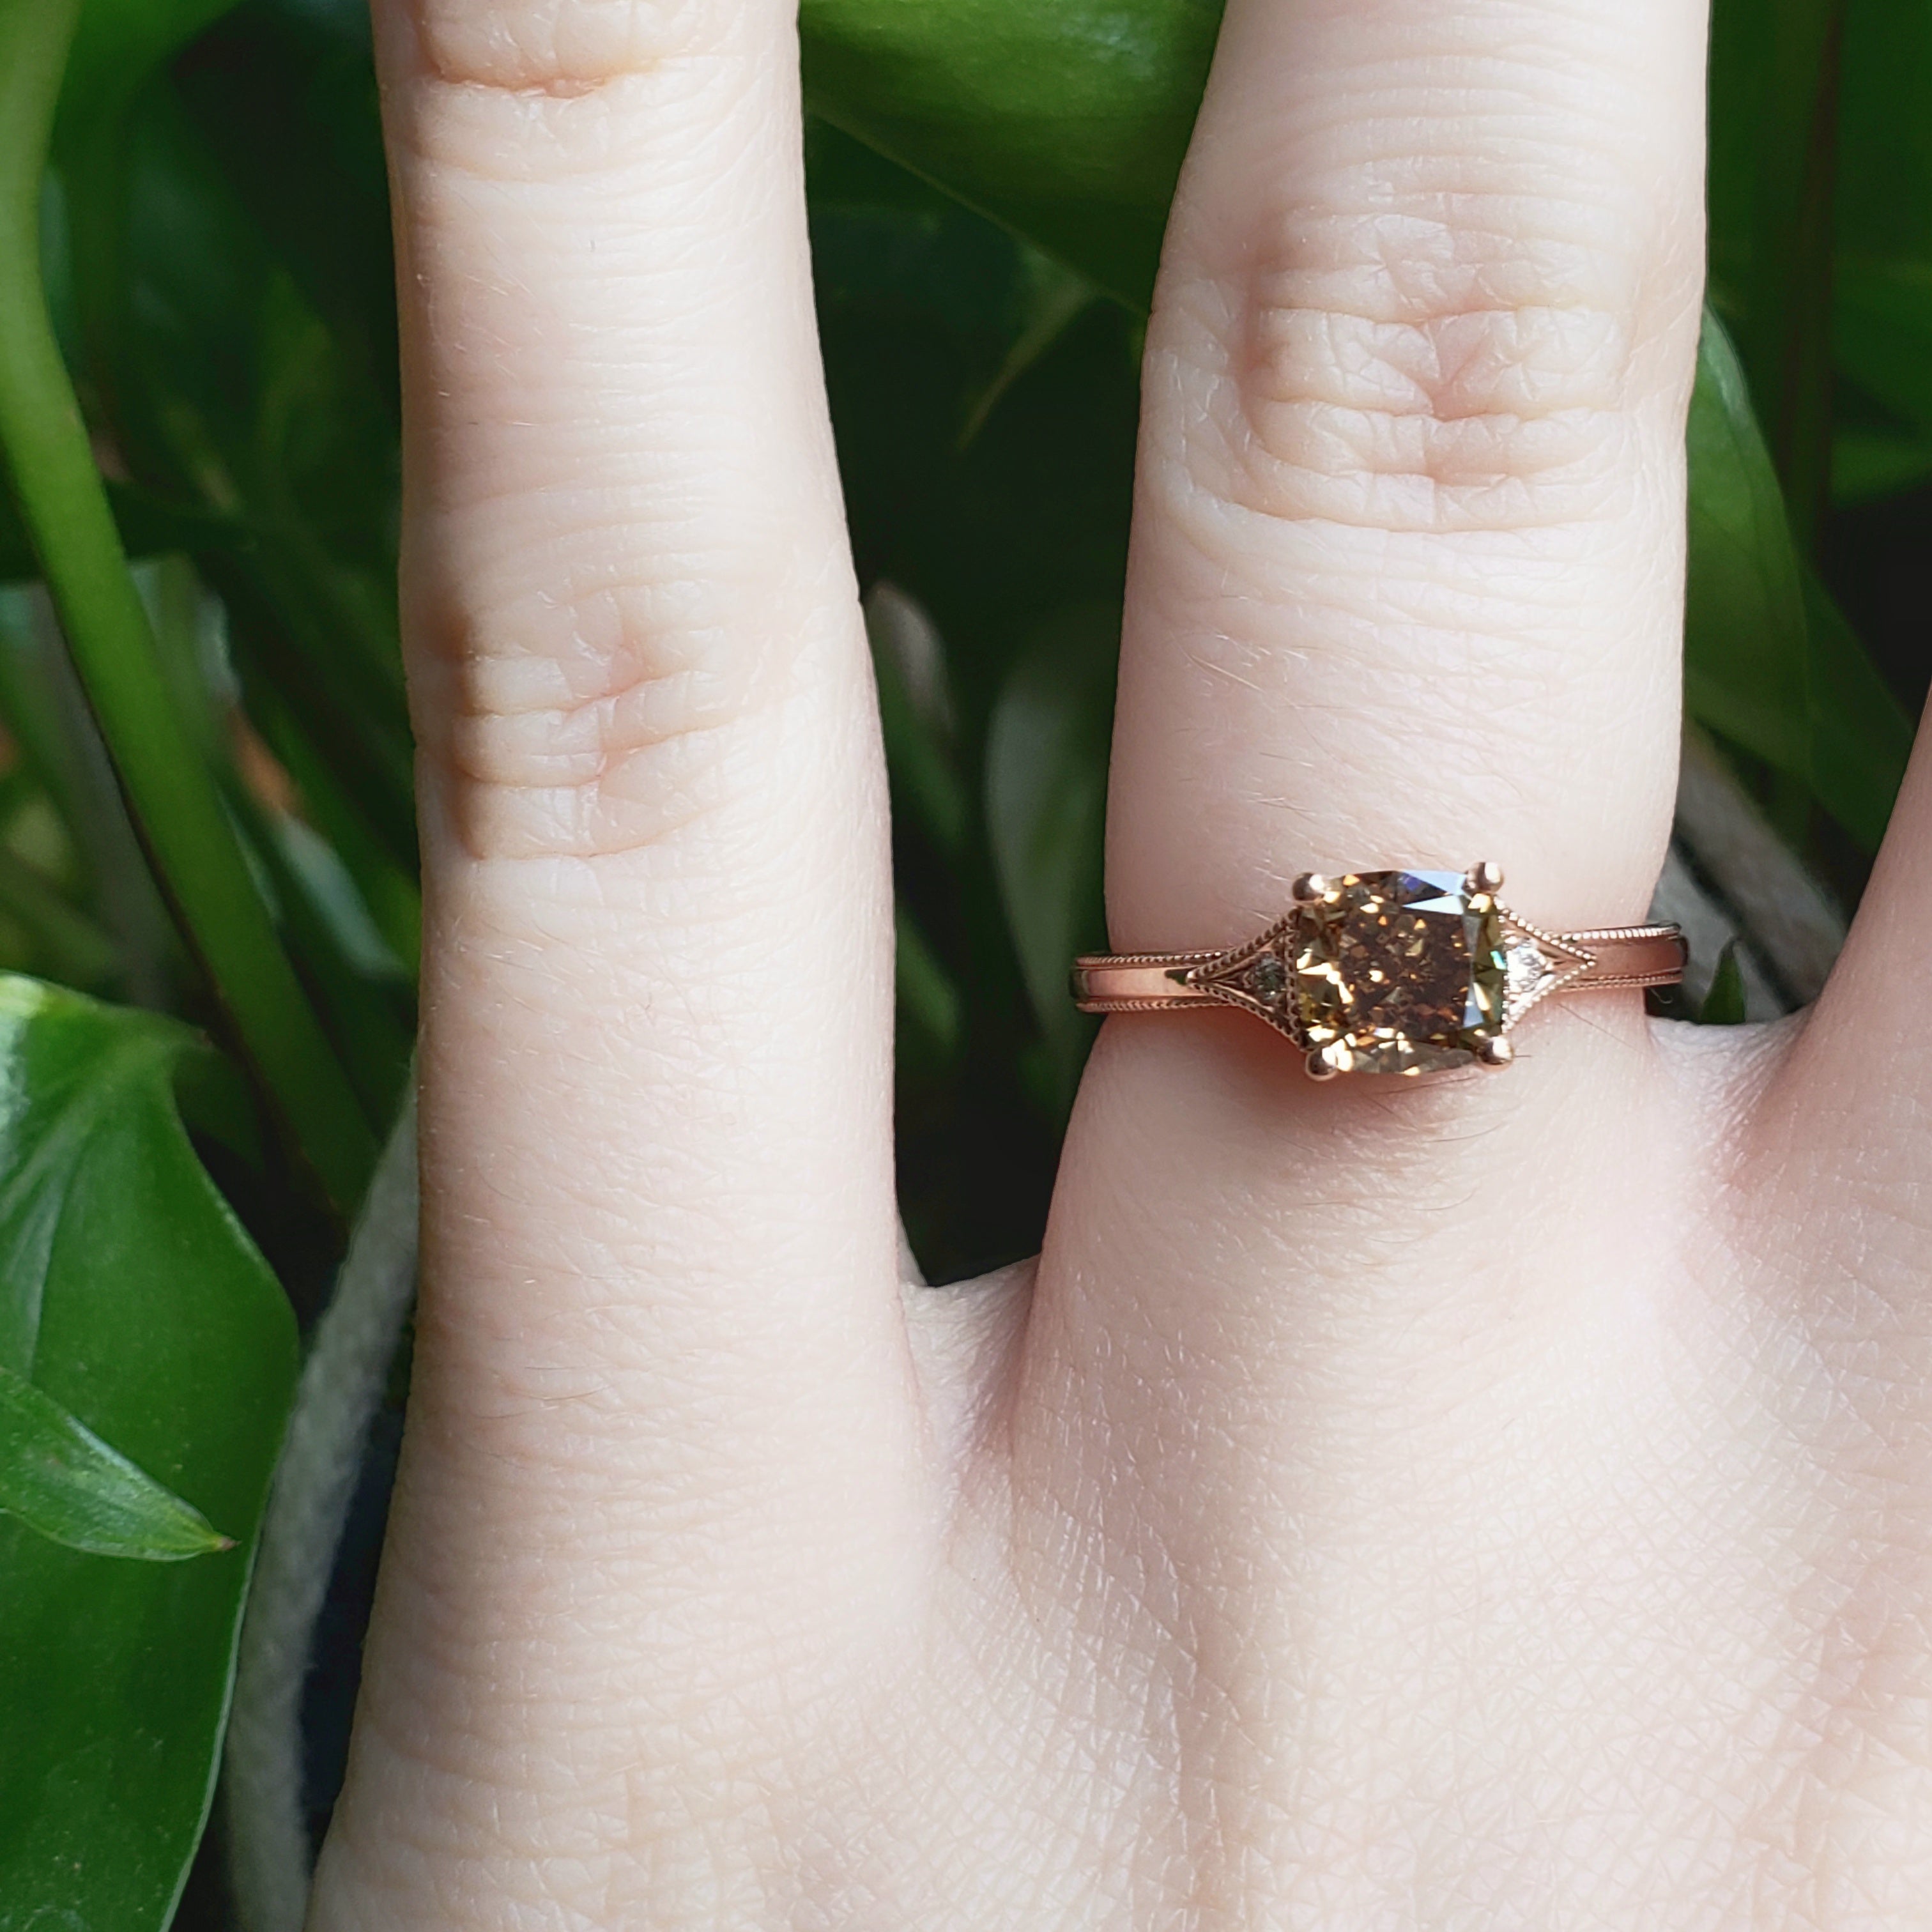 Cognac Diamond Engagement Ring | Era Design Vancouver Canada